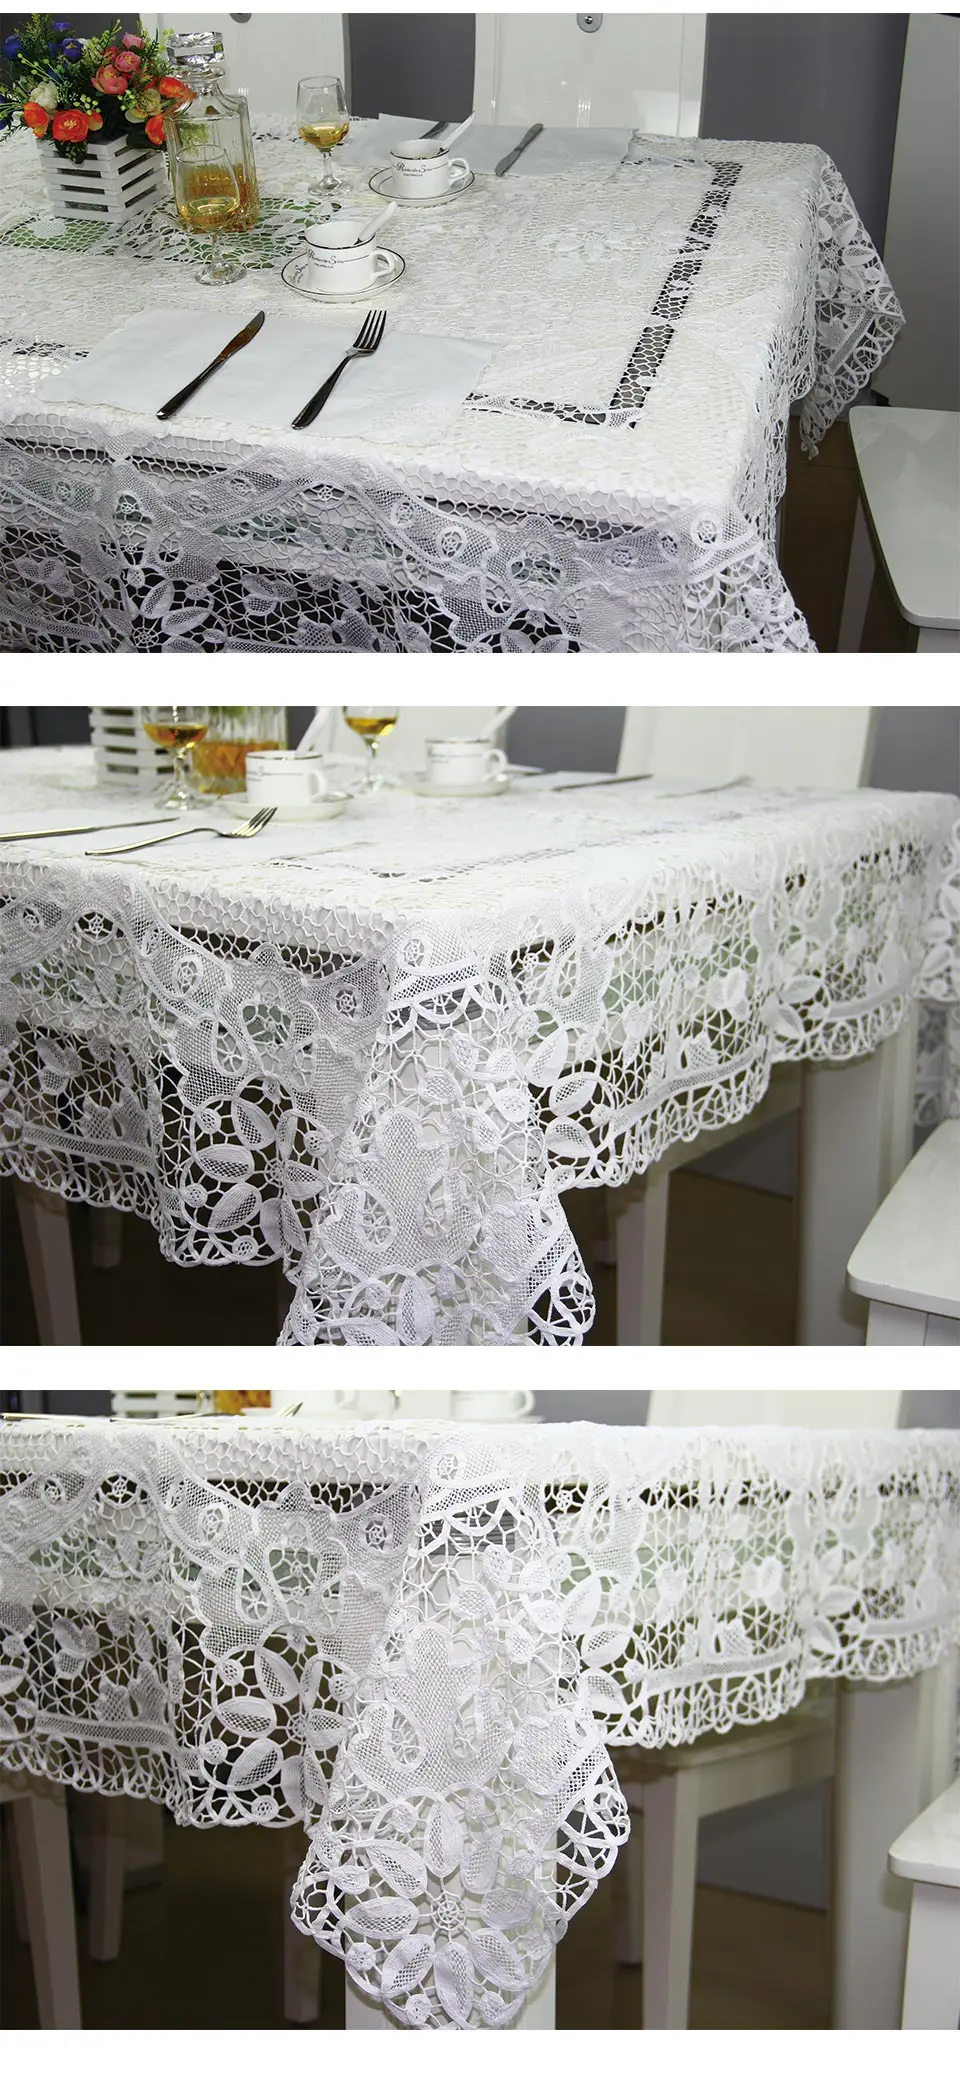 QUNYINGXIU хлопок табелткань Тоскана кружево ручной работы цветочный Классический квадратный банкетный стол покрытие 72*72 дюйма = 183*183 см